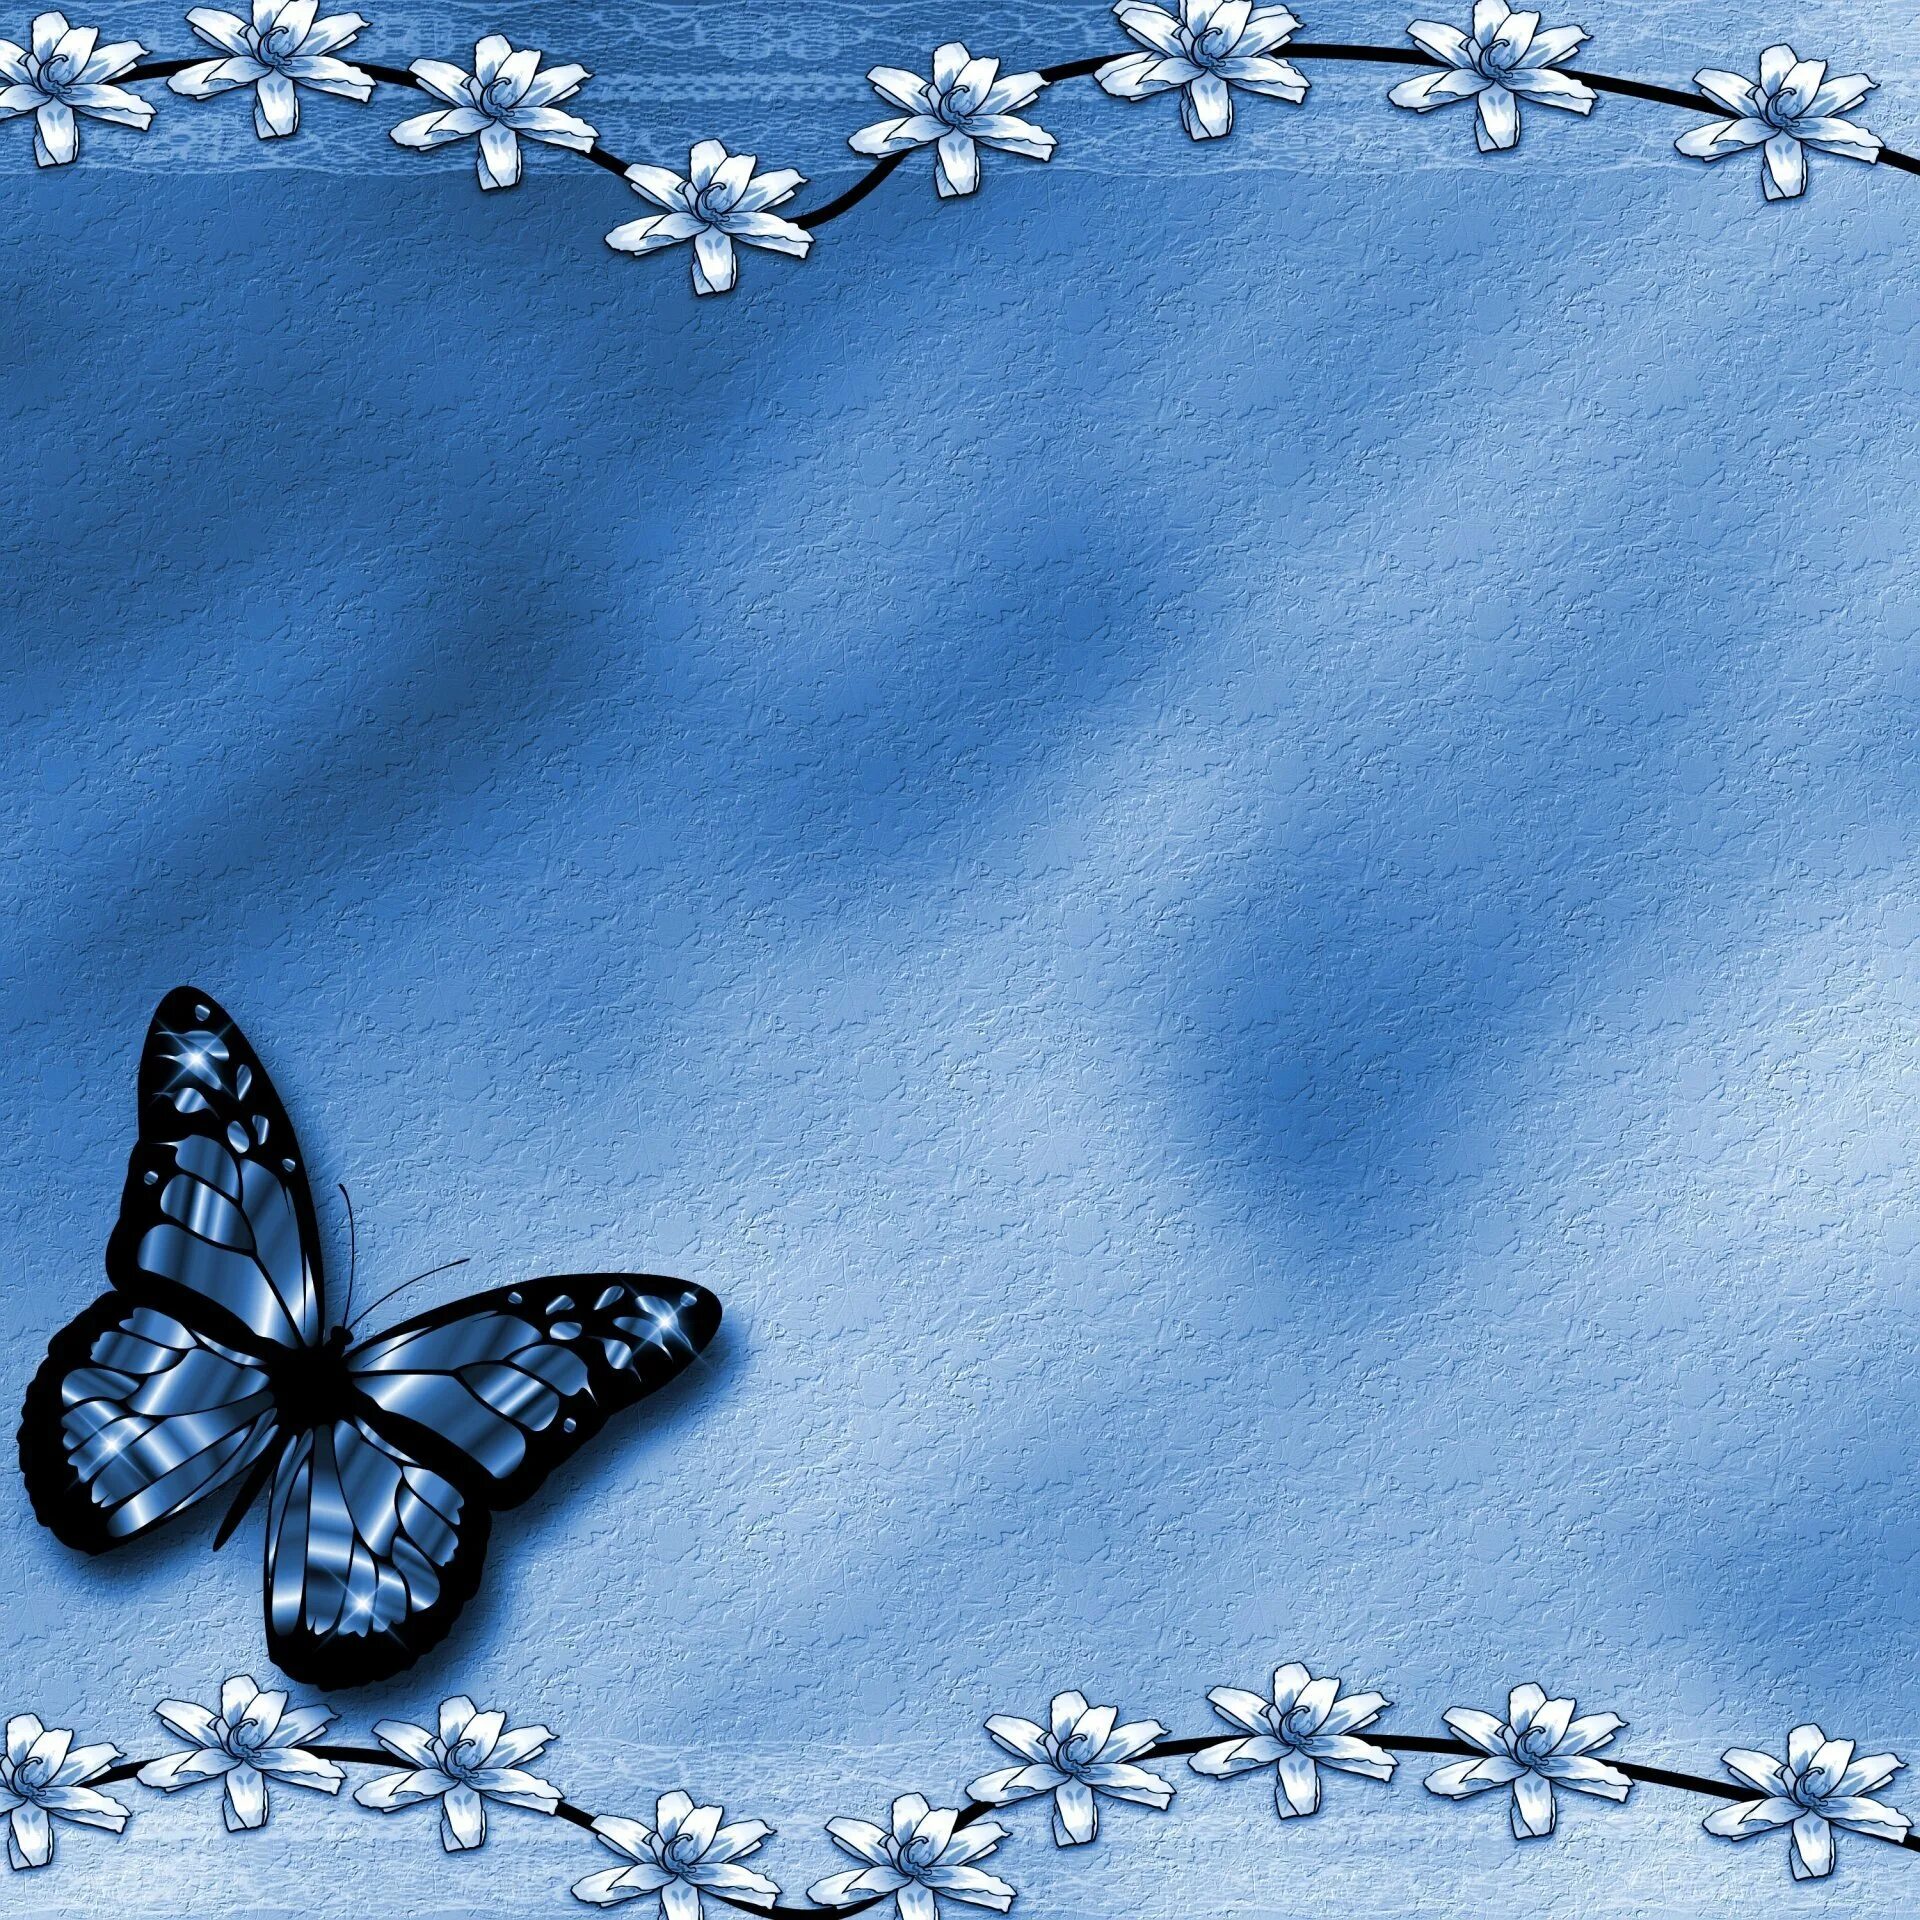 Сделать фоновую картинку. Фон бабочки. Красивый фон с бабочками. Голубой фон с бабочками. Фон для презентации бабочки.